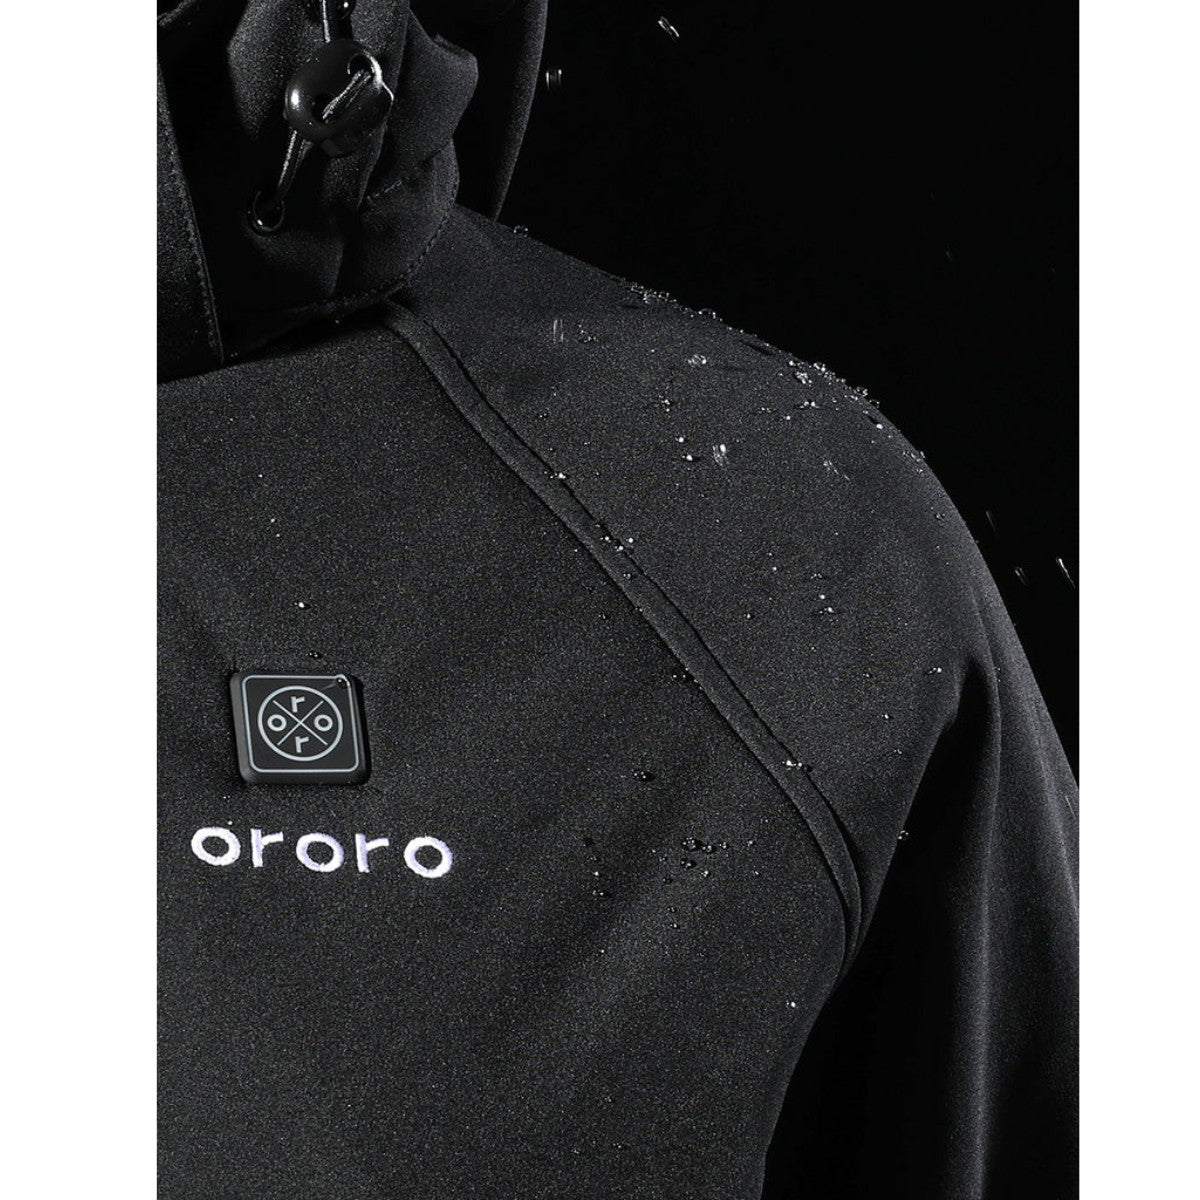 Ororo Women's Classic Heated Jacket - Black